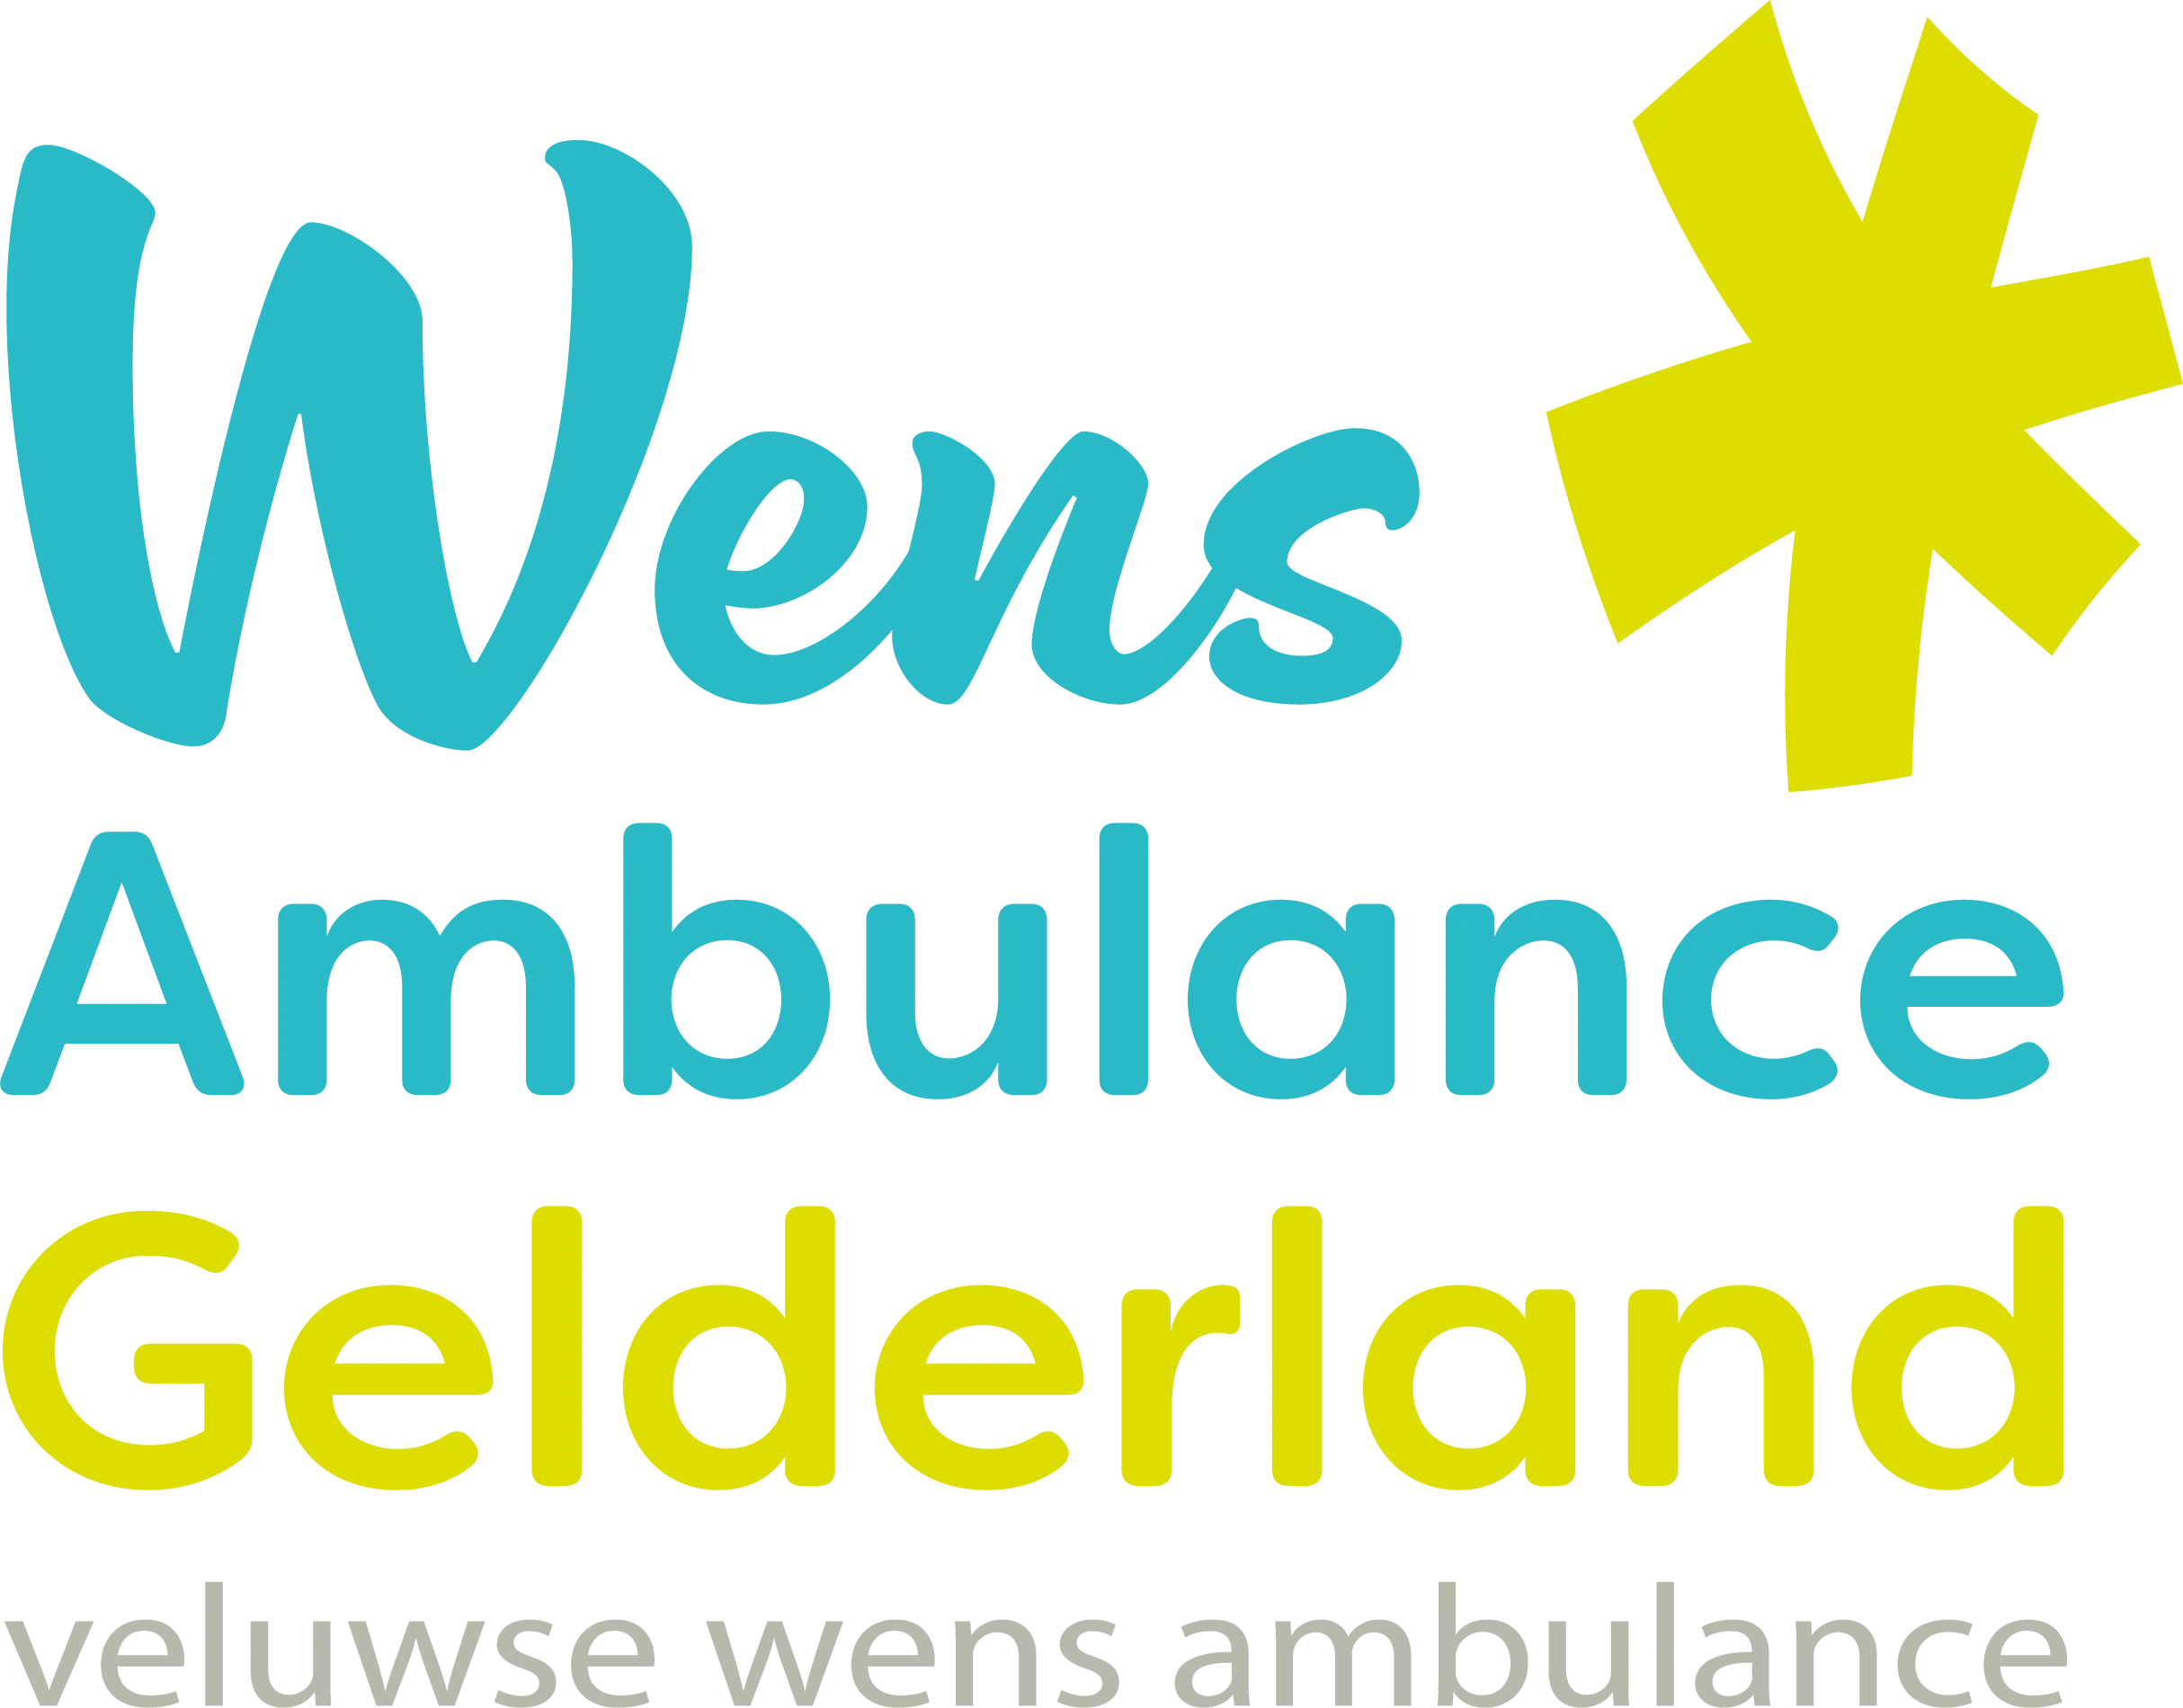 vwa gelderland logo def zndr schaduw